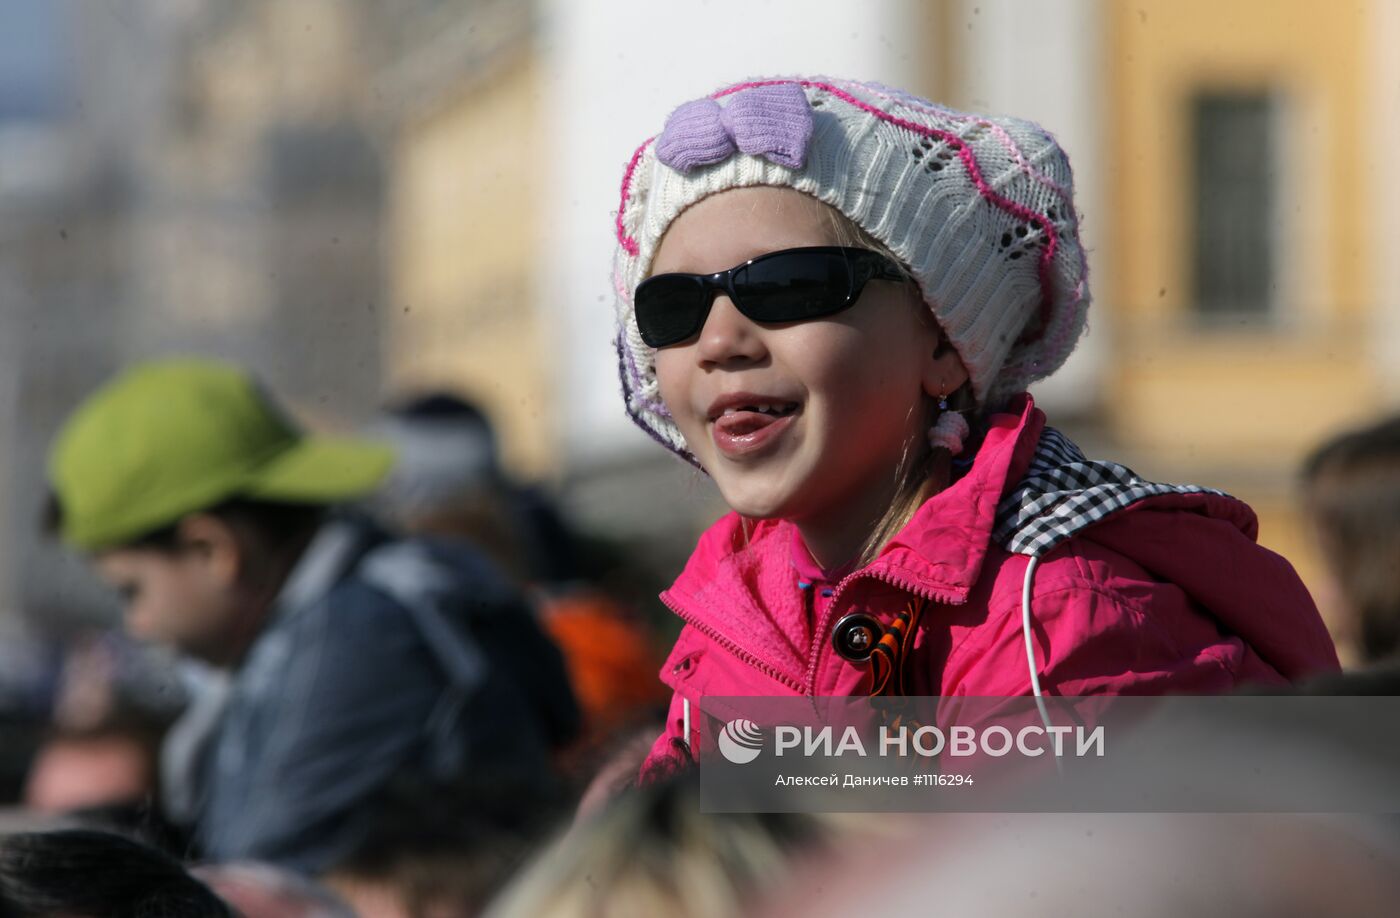 Военный парад в Санкт-Петербурге, посвященный Дню Победы